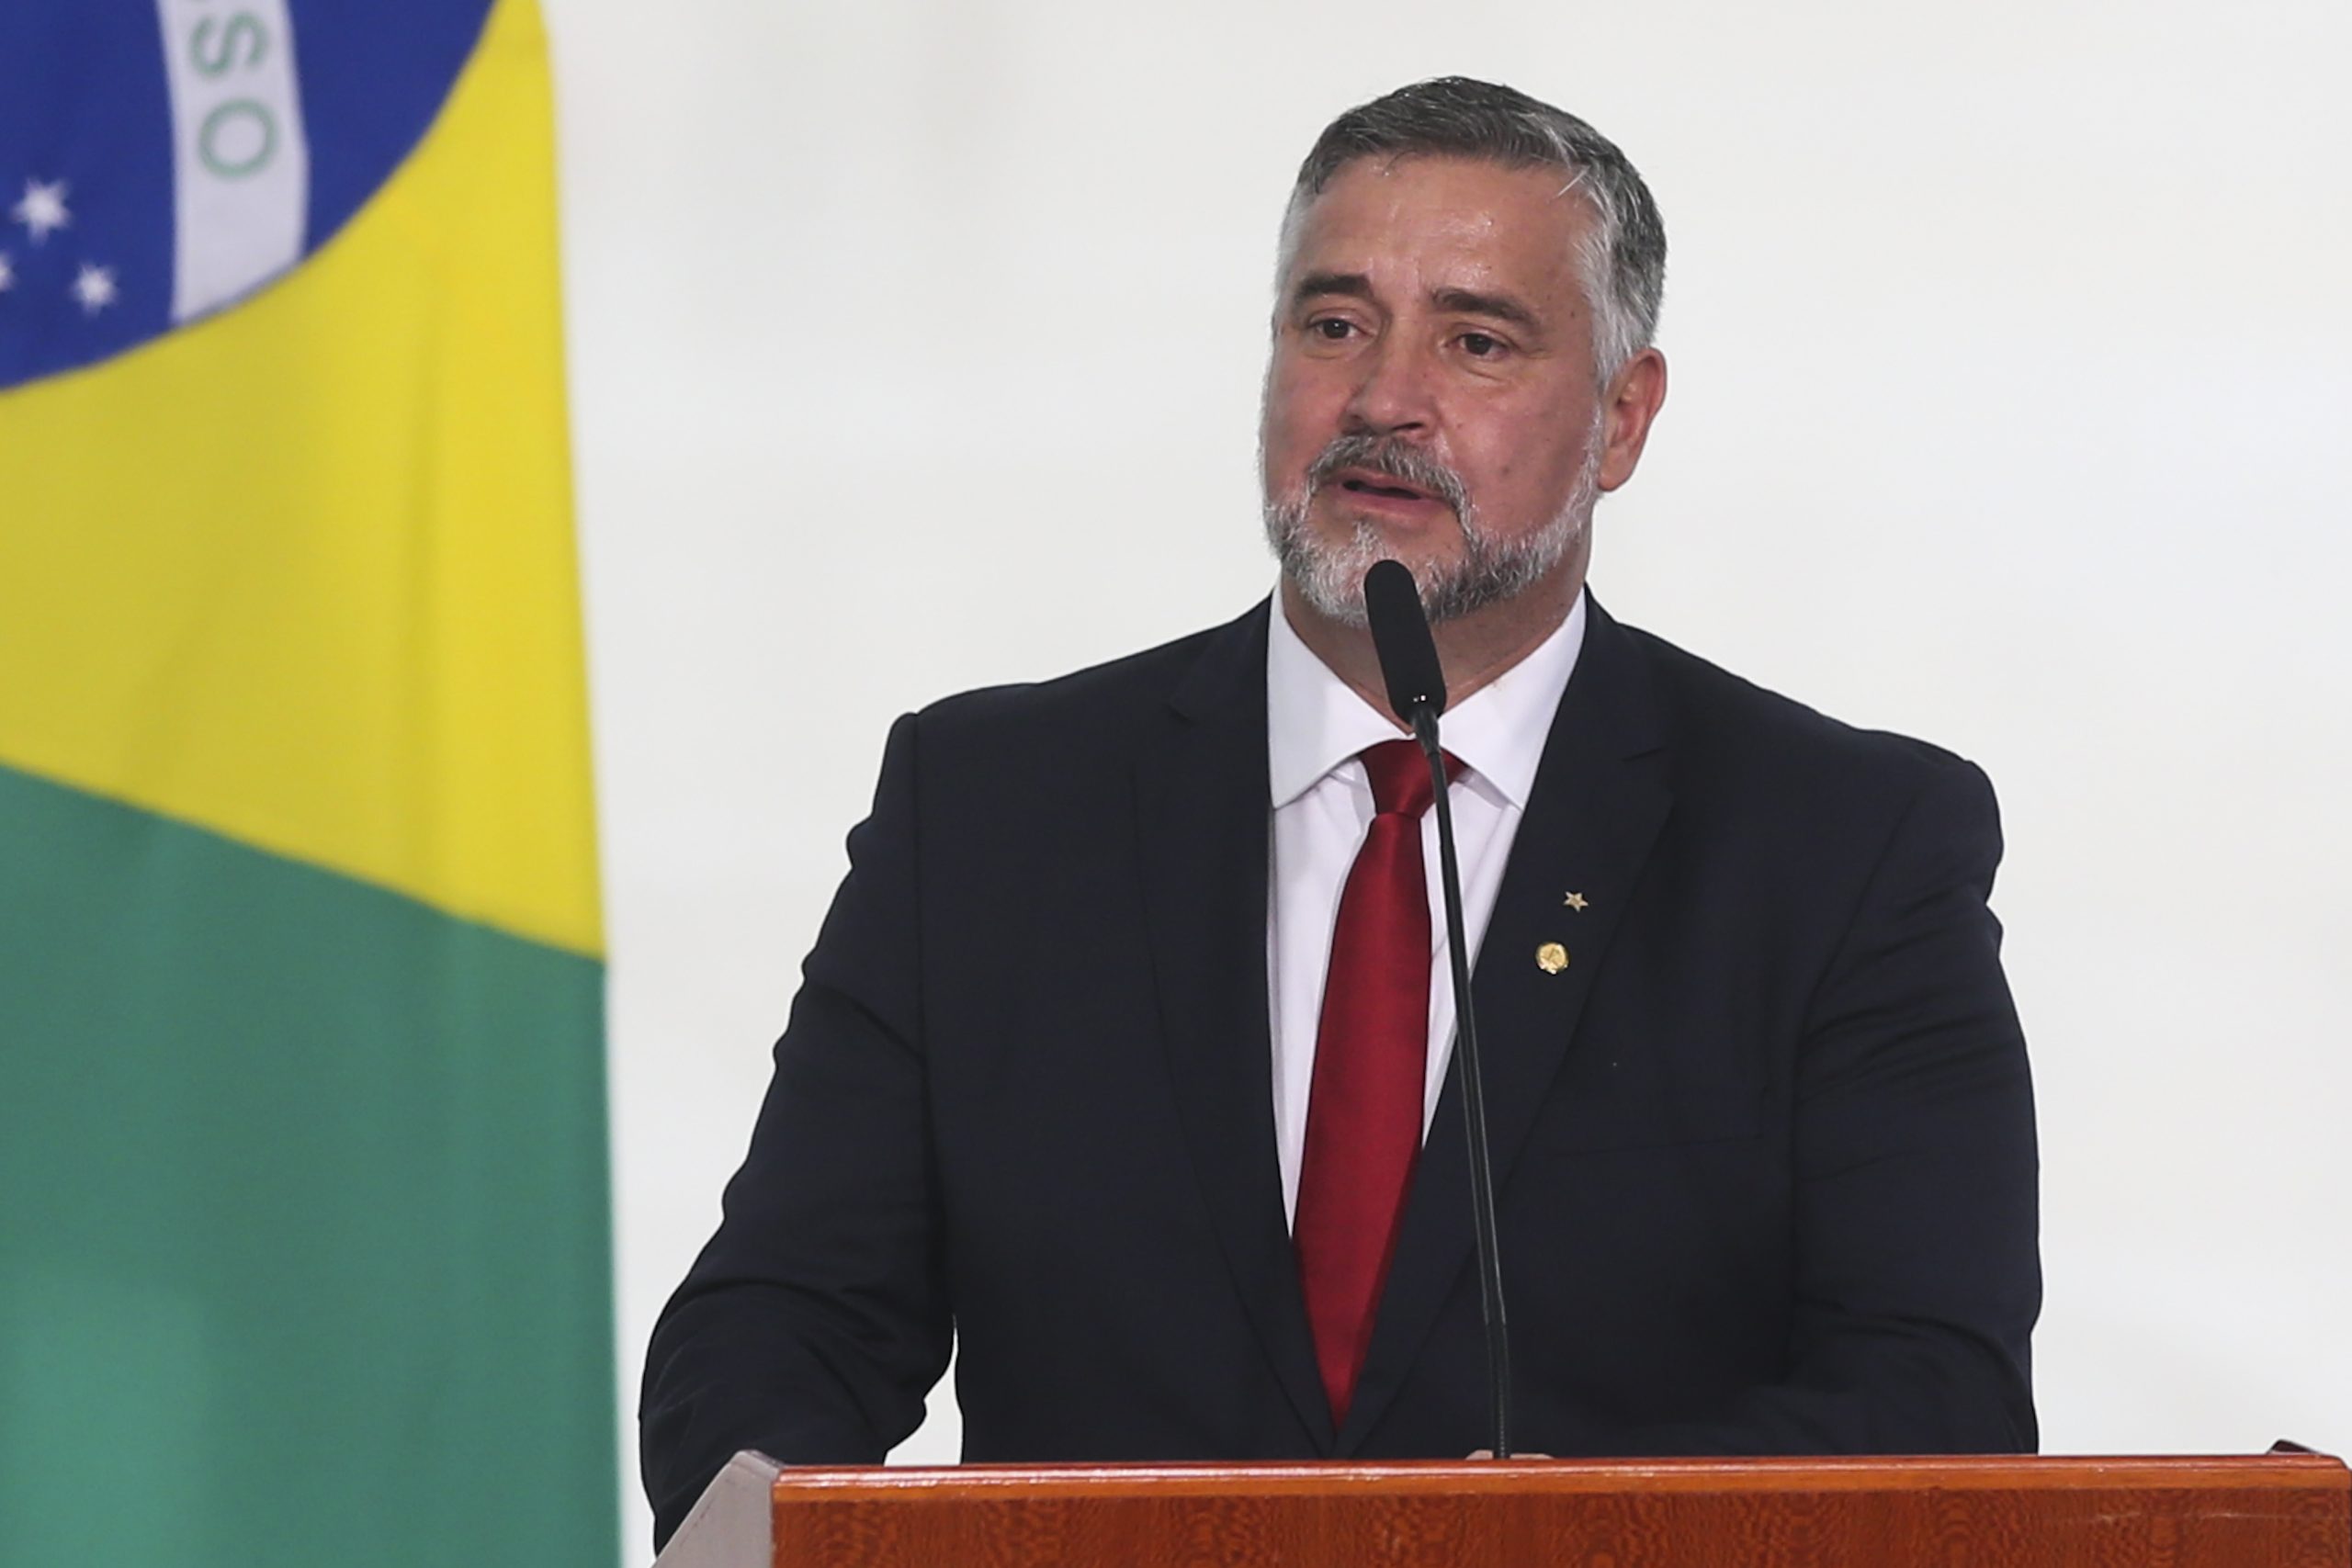 O ministro da Secretaria de Comunicação Social da Presidência, Paulo Pimenta, toma posse, no Salão Oeste do Palácio do Planalto